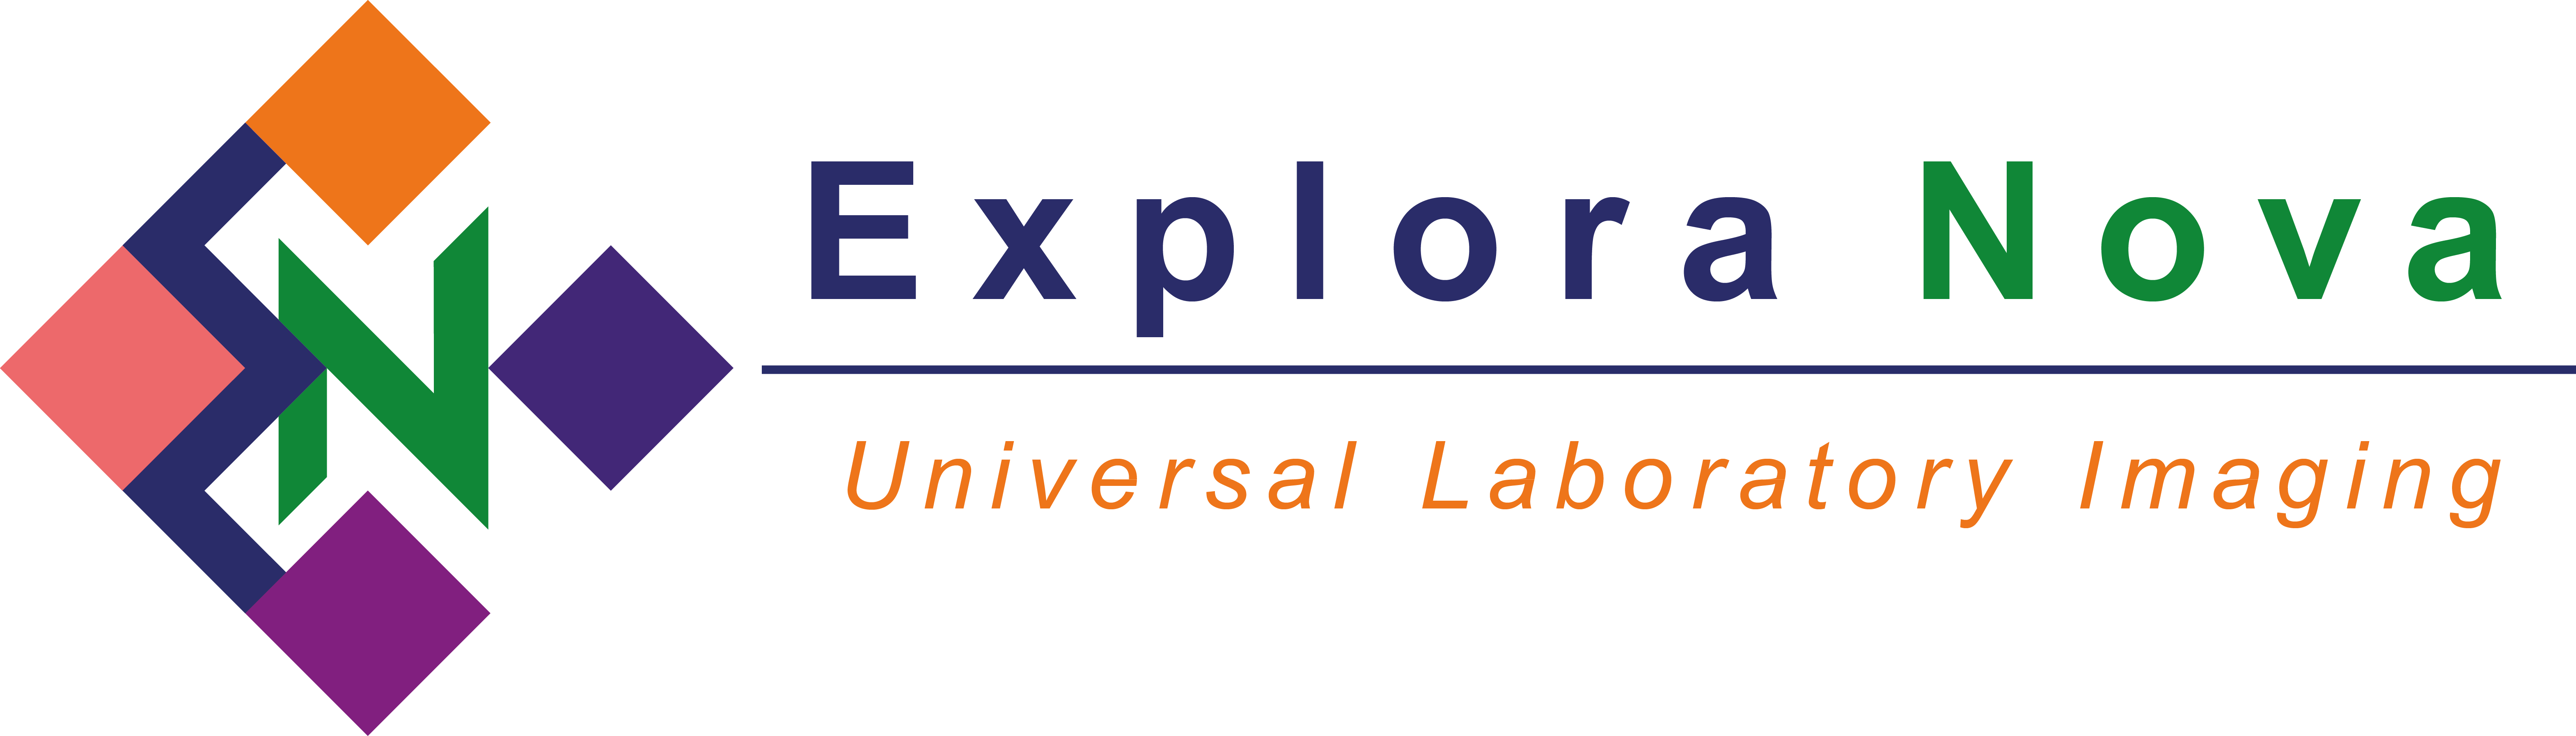 Download Explora Nova Logo - Explora Nova (6276x1792), Png Download